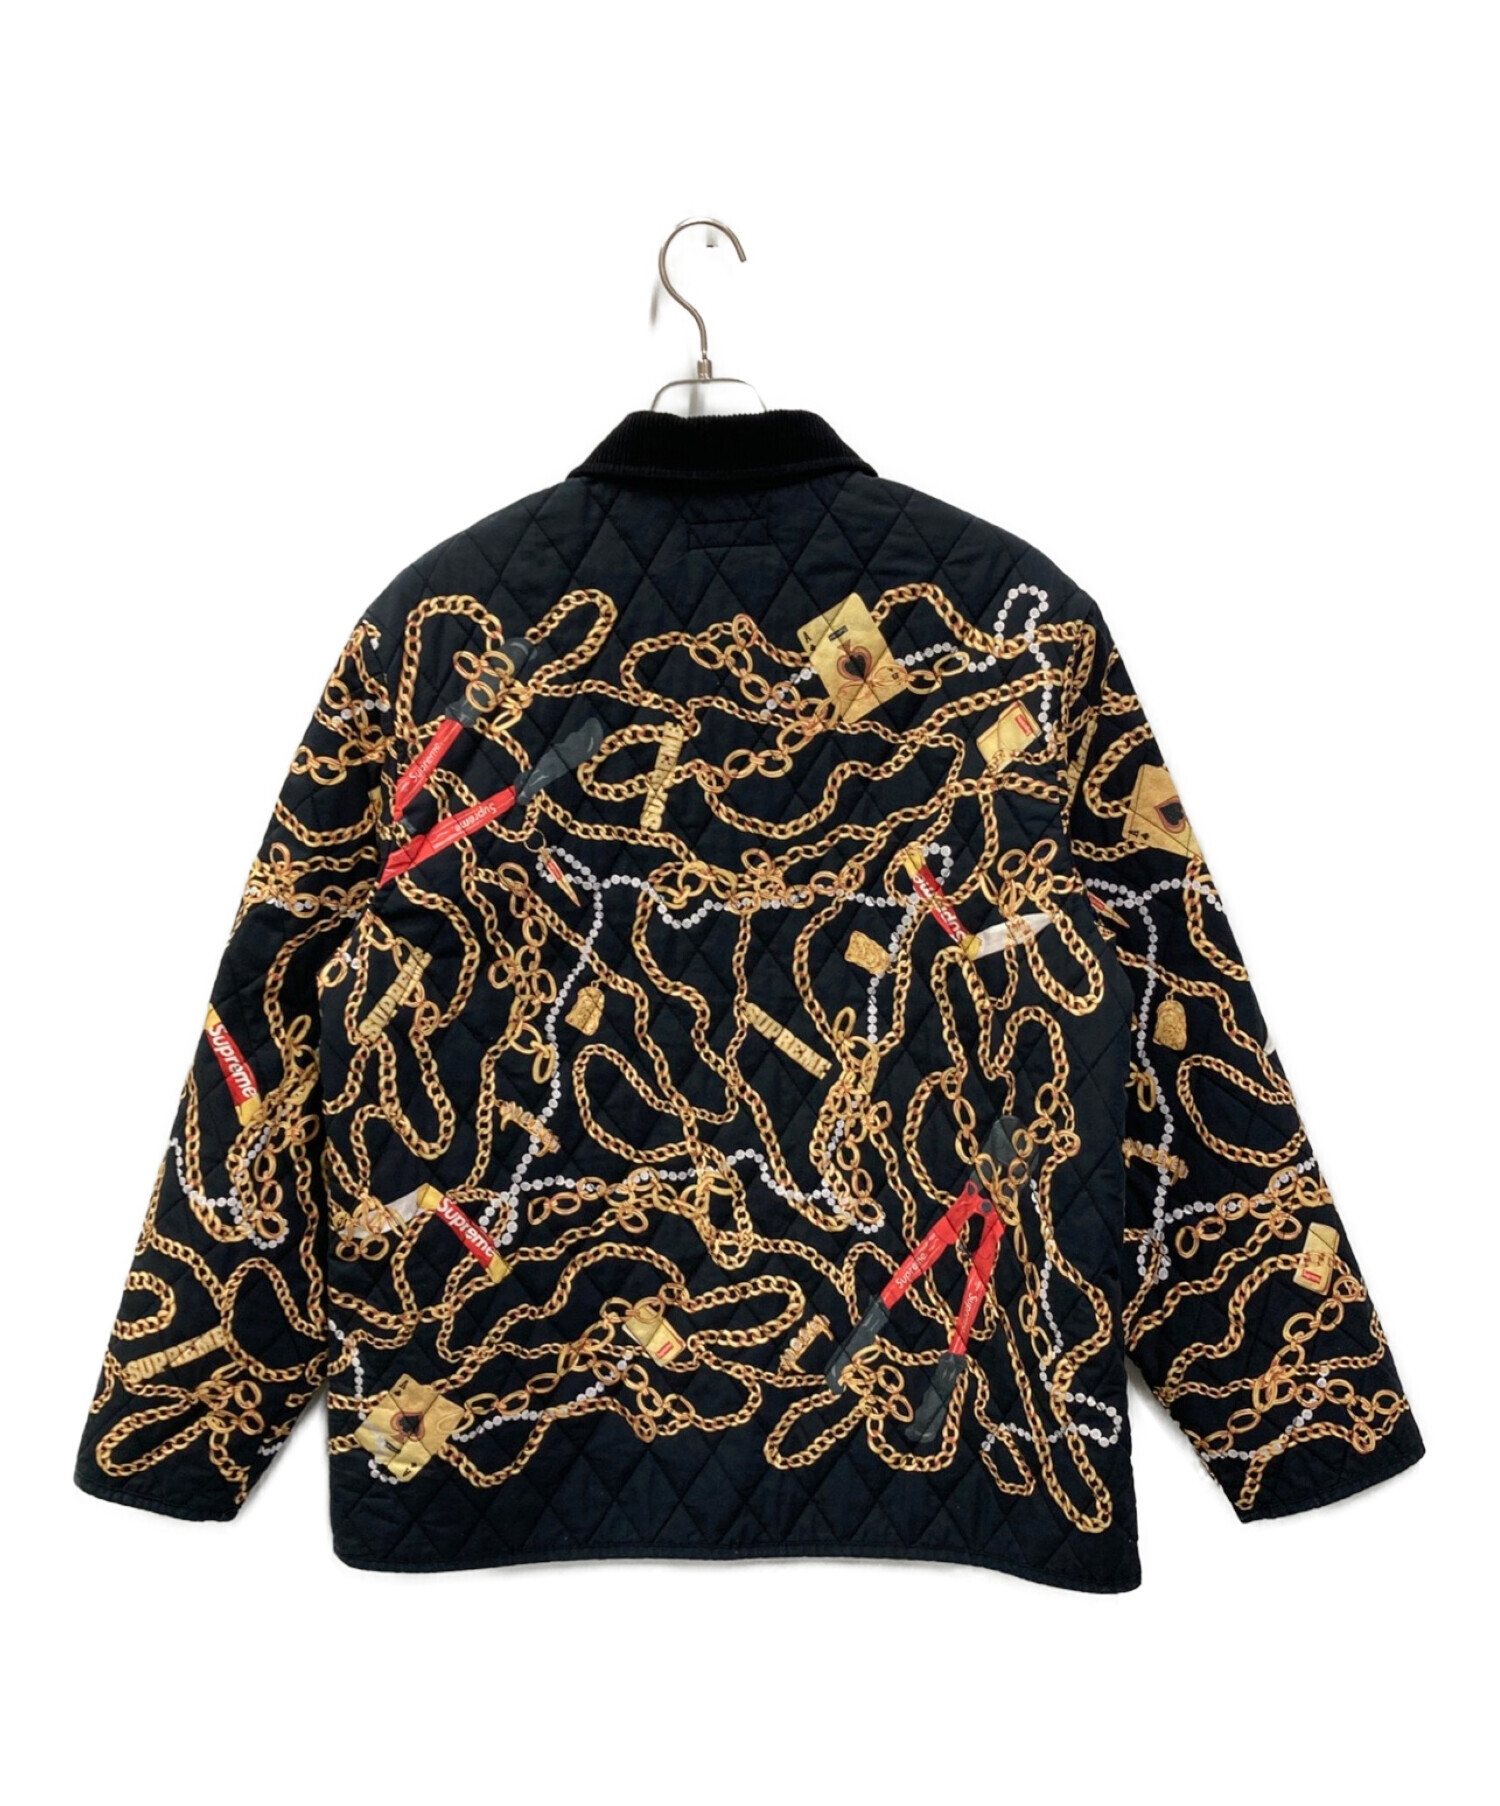 袖丈62supreme chains quilted jacket シュプリーム